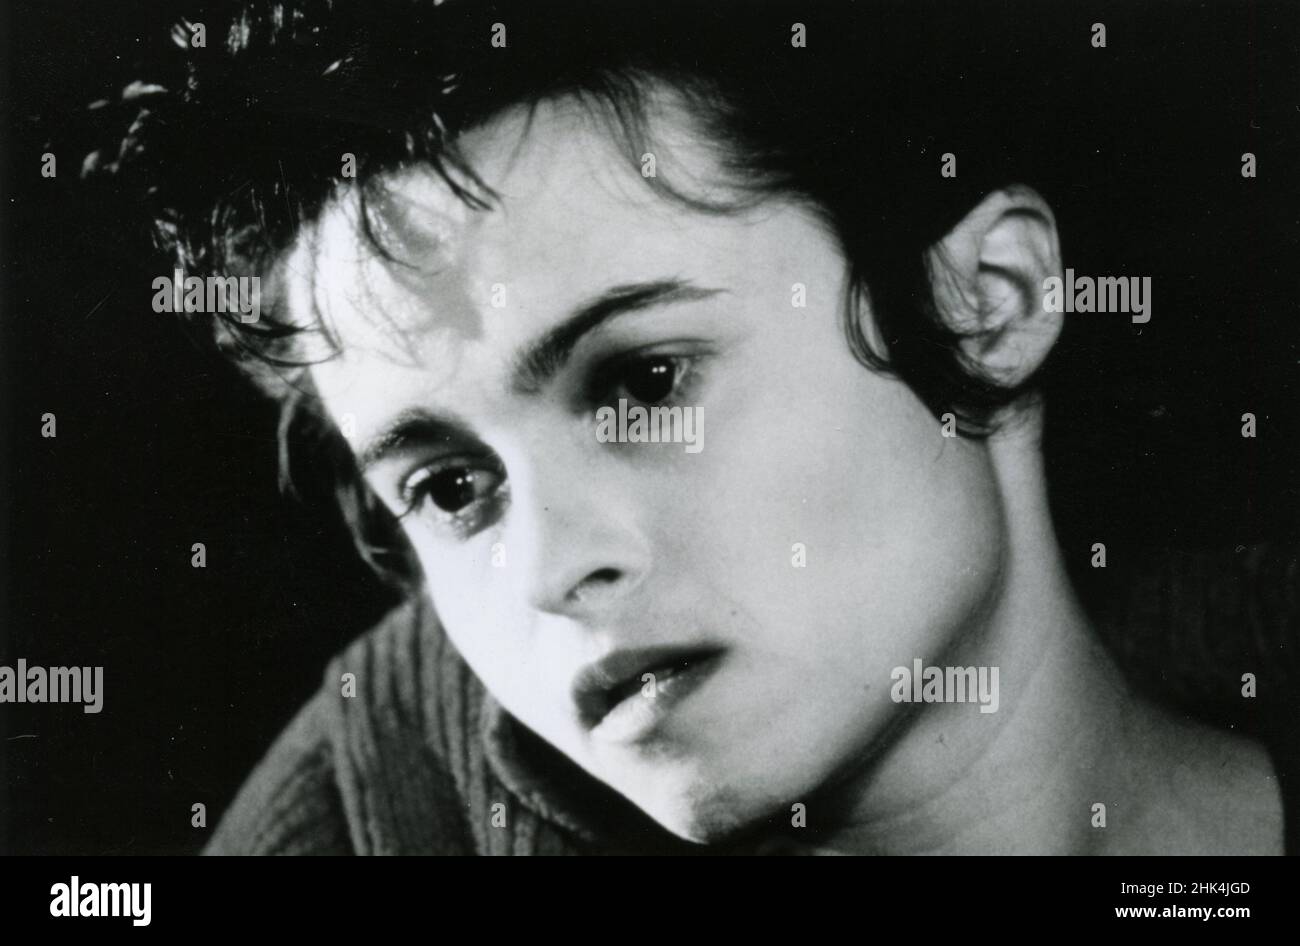 Actress Helena Bonham Carter in the movie The Theory of Flight, UK 1998 Stock Photo